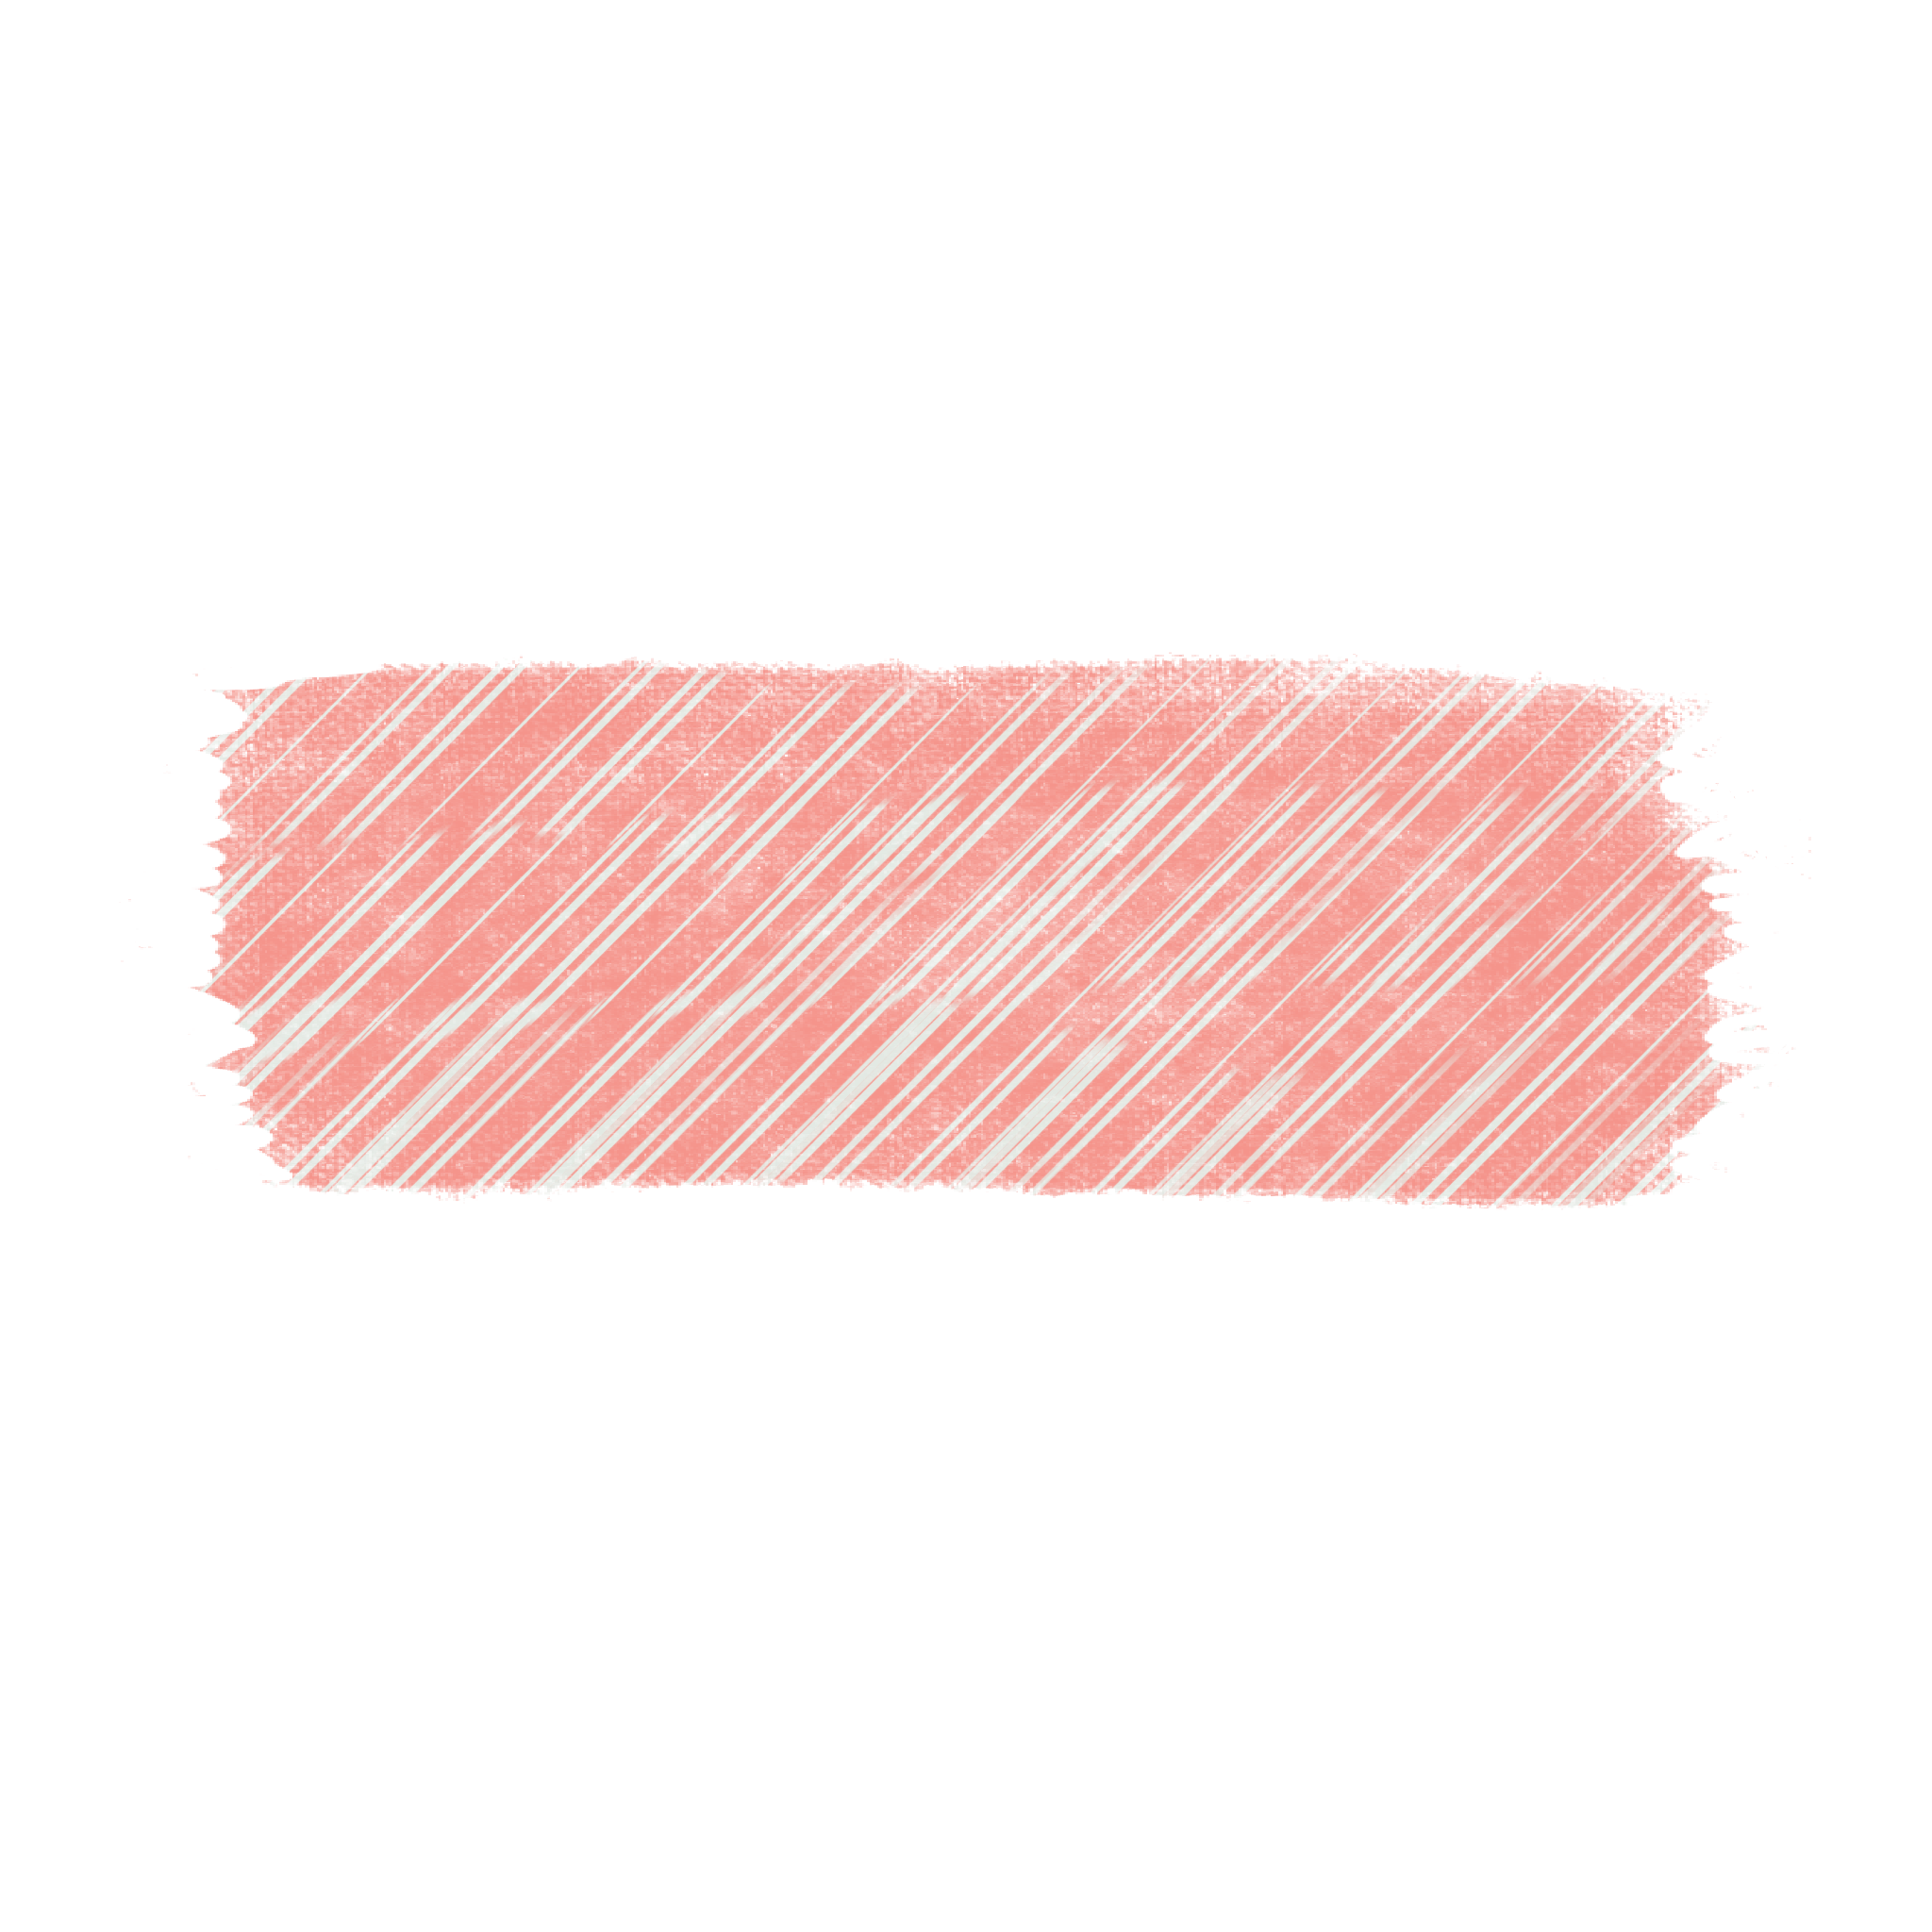 ピンクのマスキングテープ Anttiq 無料アンティークイラスト素材サイト